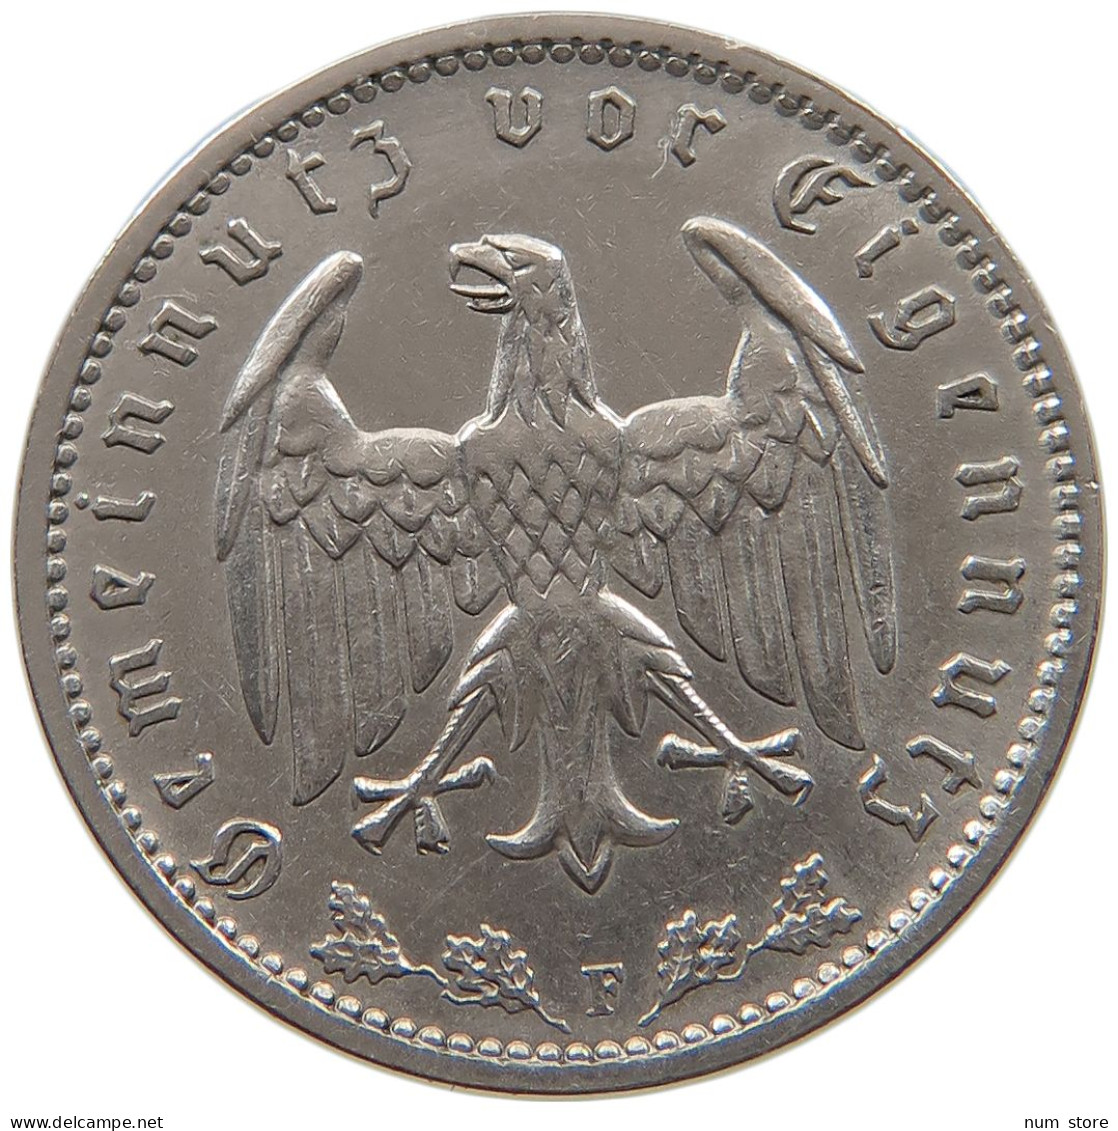 DRITTES REICH MARK 1934 F J.354 #a072 0263 - 1 Reichsmark